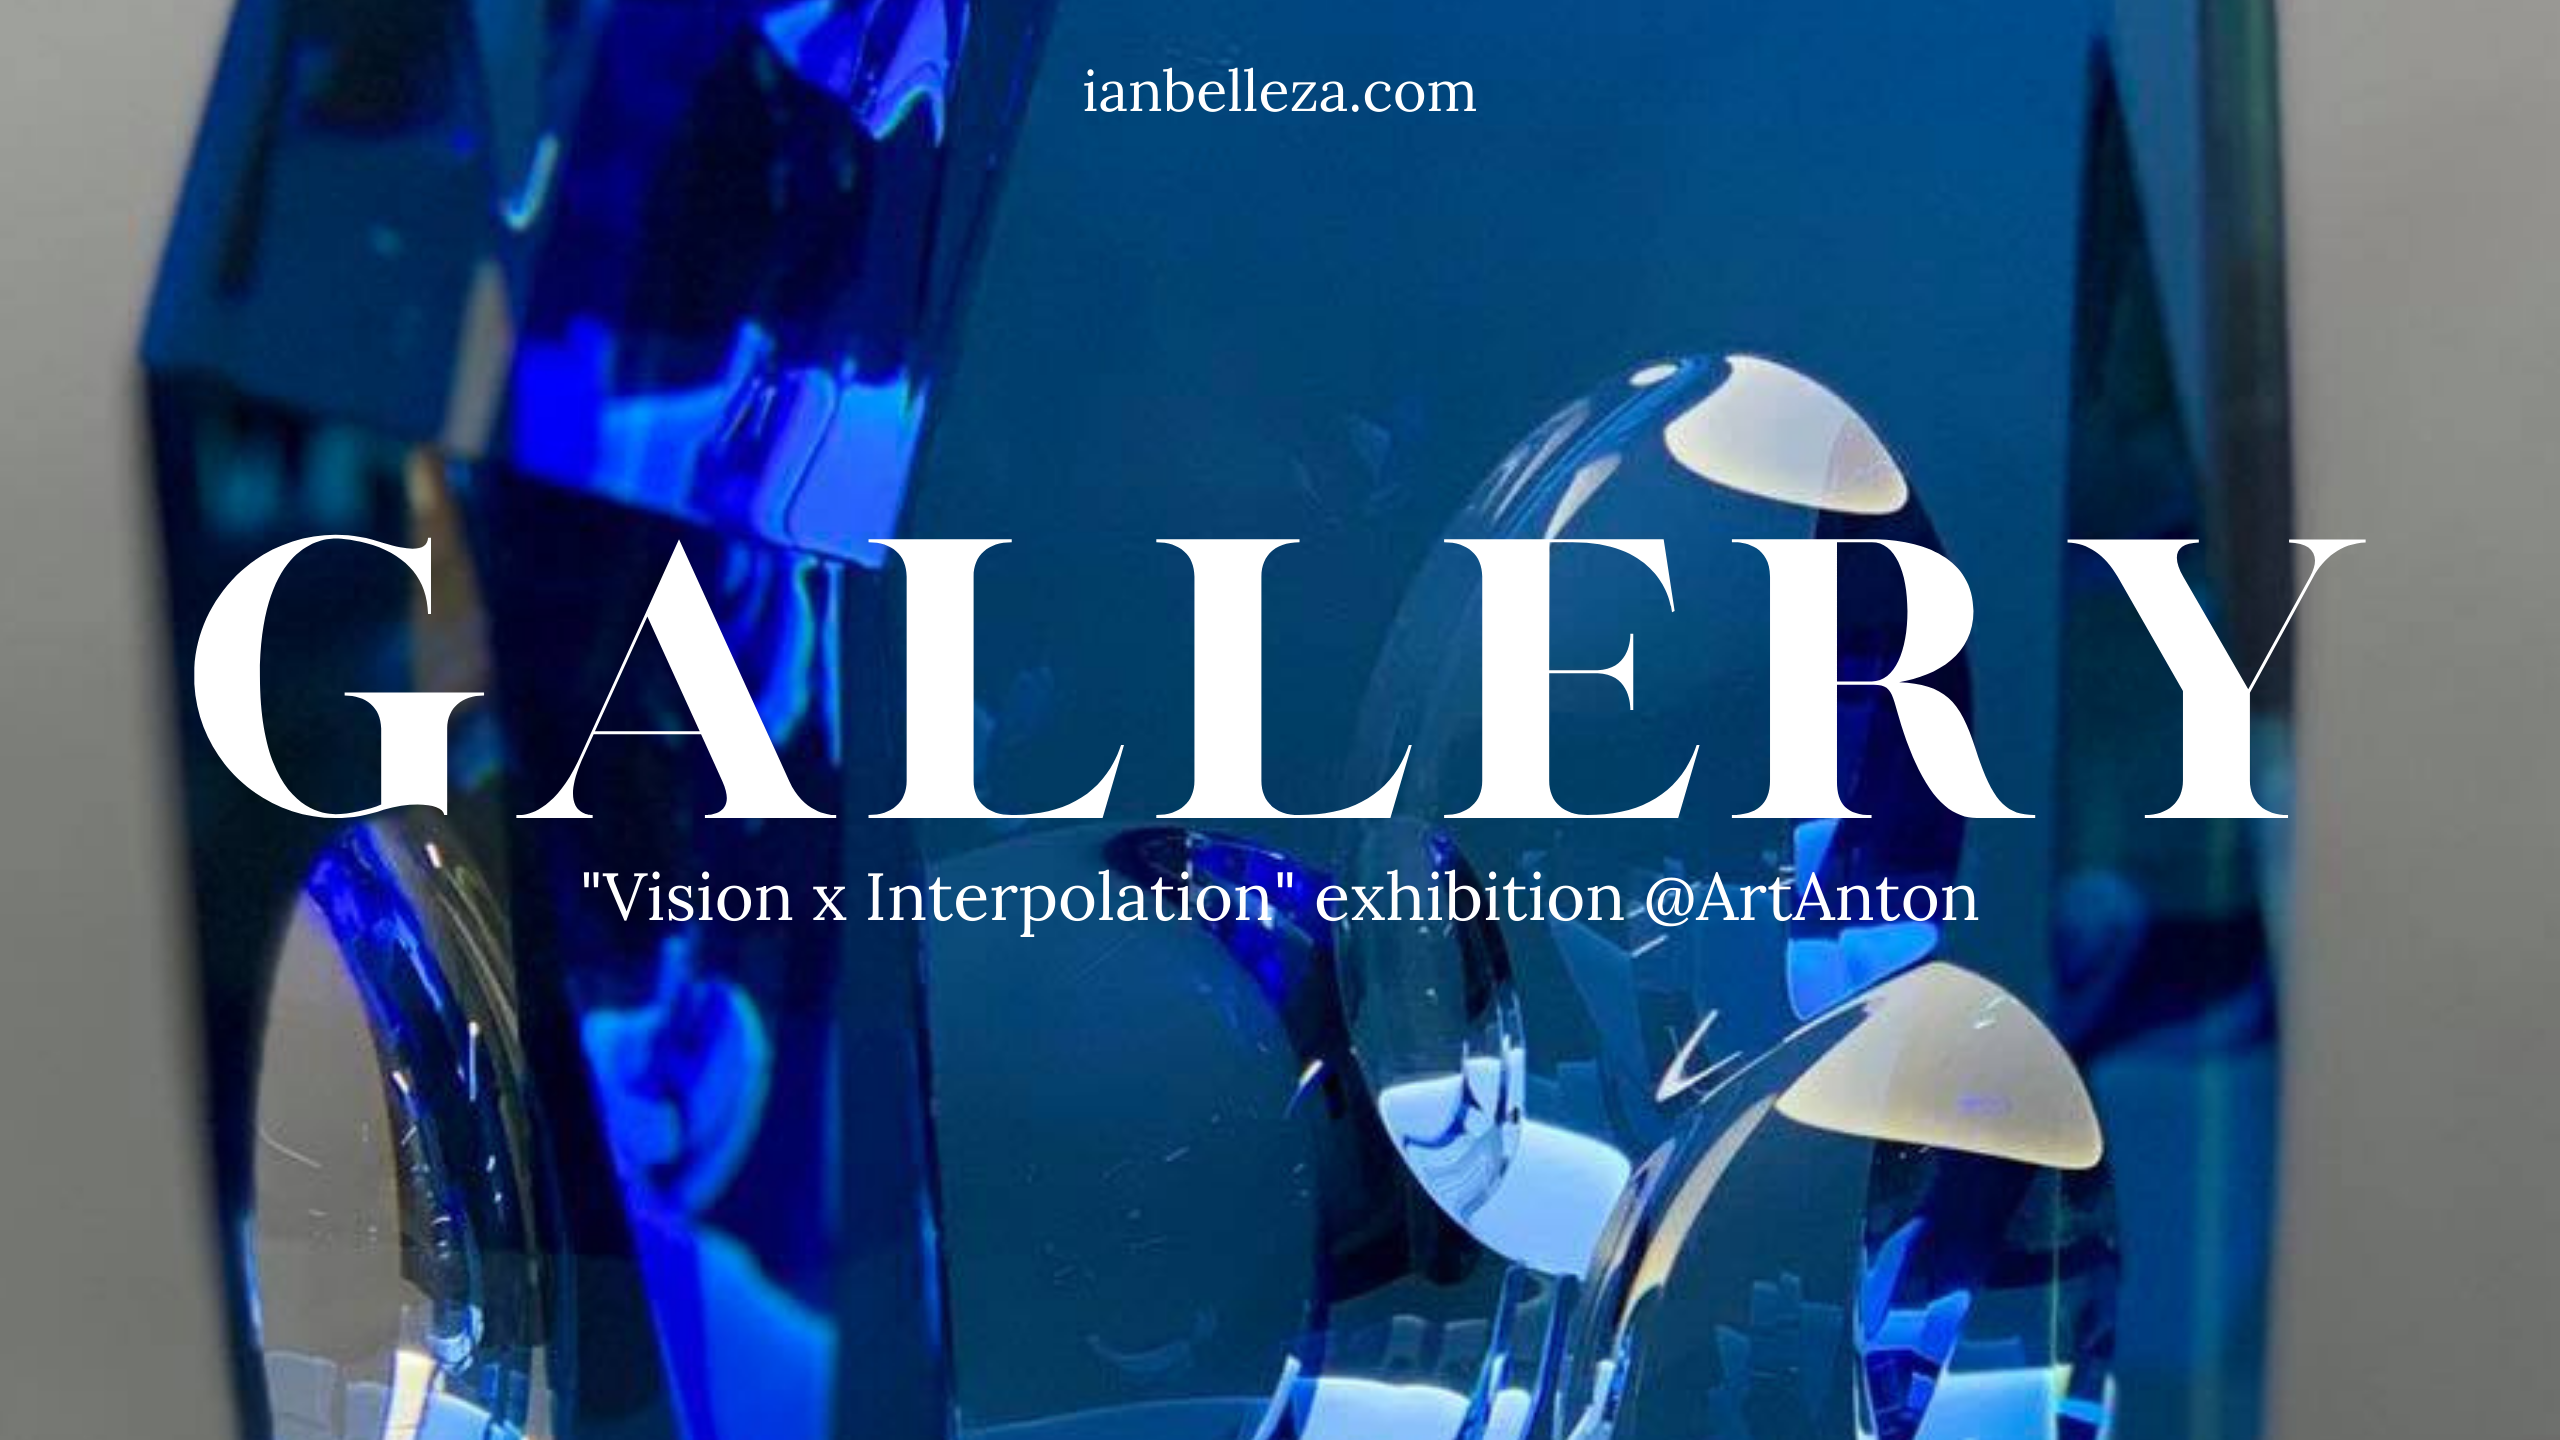 Gallery: Vision x Interpolation exhibition @ArtAnton